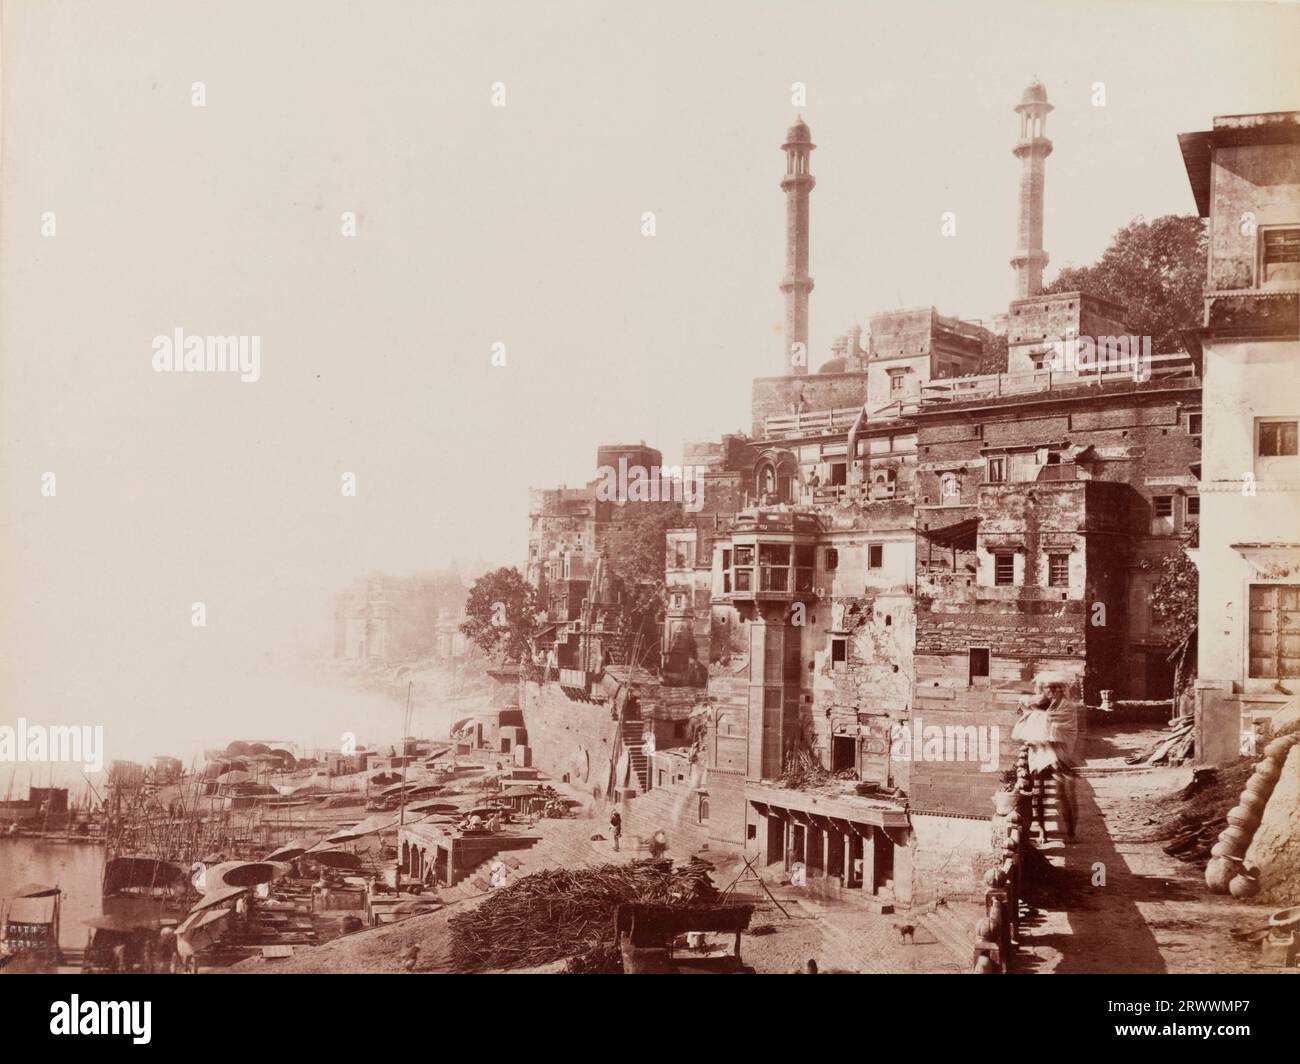 VEW du ghat de Panchaganga à Benares [Varanasi]. Les minarets de la Mosquée Alamgir, construits par l'Emporer Aurangzeb, donnent sur le Gange. Les rives de la rivière sont bordées de bateaux, de parasols et de tas de bois. Inscrit sur négatif : Frith's Series. 3028. Benares. Légende : Ganges River.Burning Ghat. Mosquée d'Aurangzib, Benares. Banque D'Images